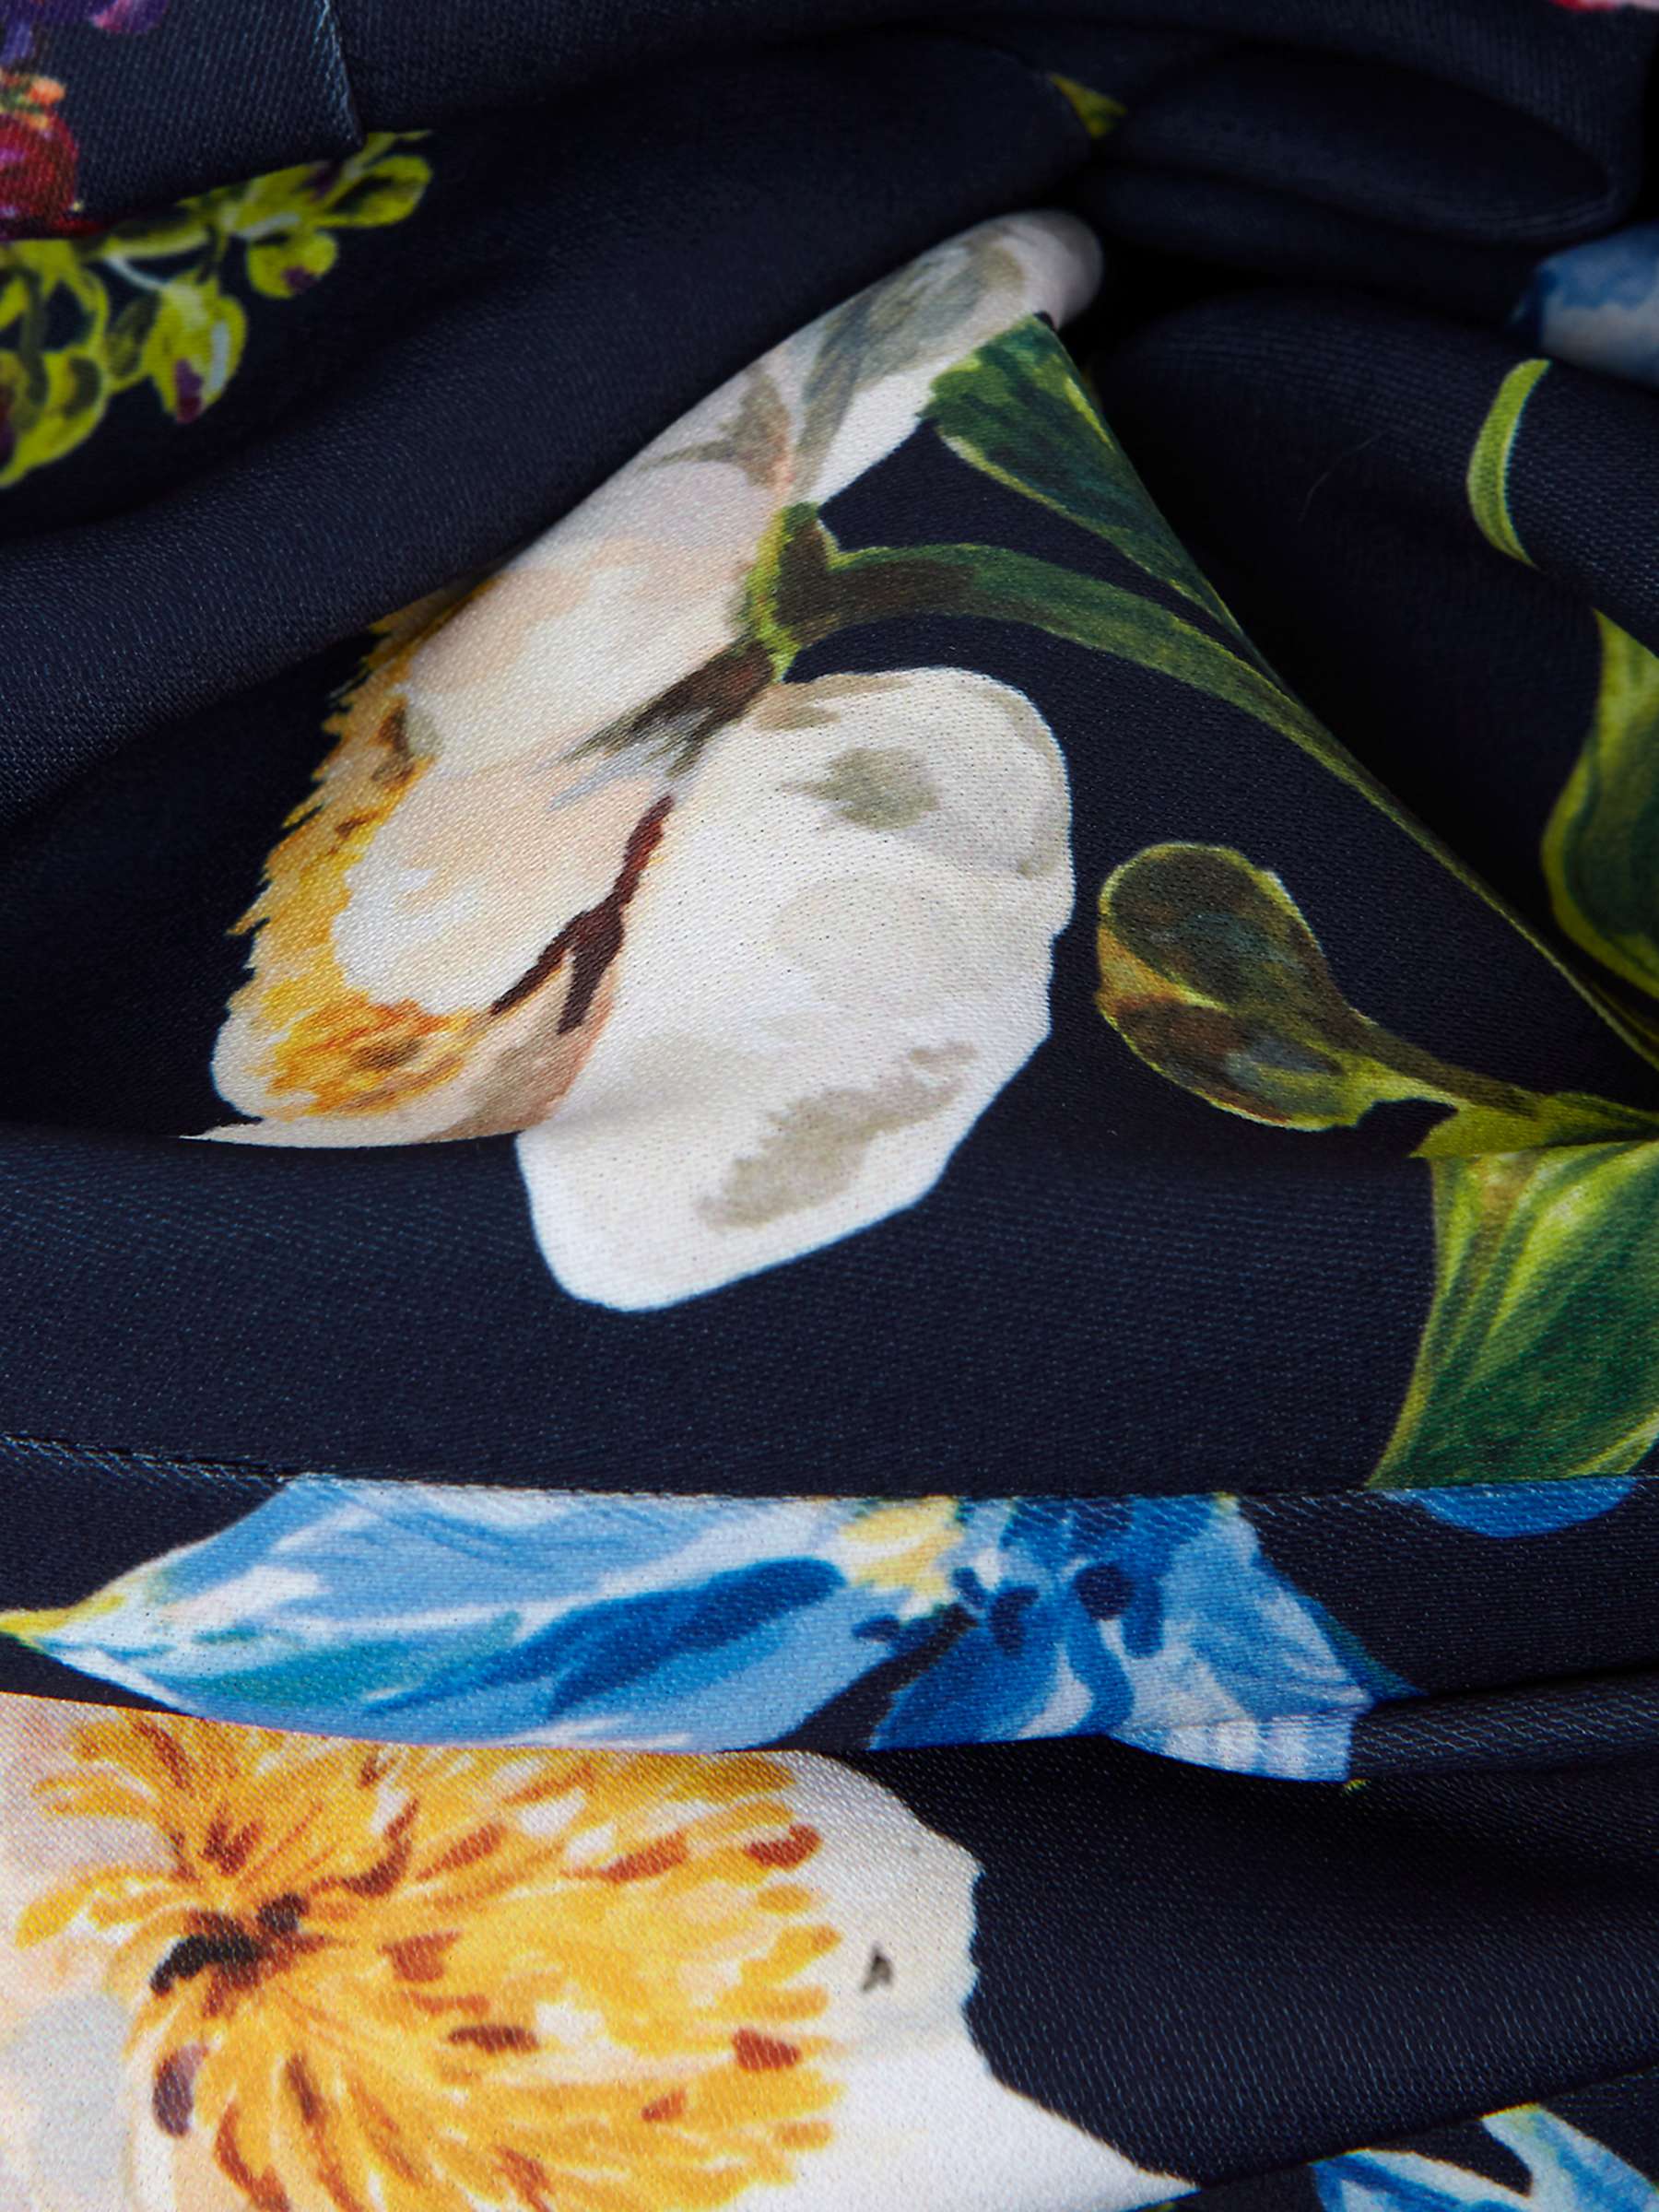 Buy Phase Eight Kallie V-Neck Floral Jumpsuit, Navy/Multi Online at johnlewis.com